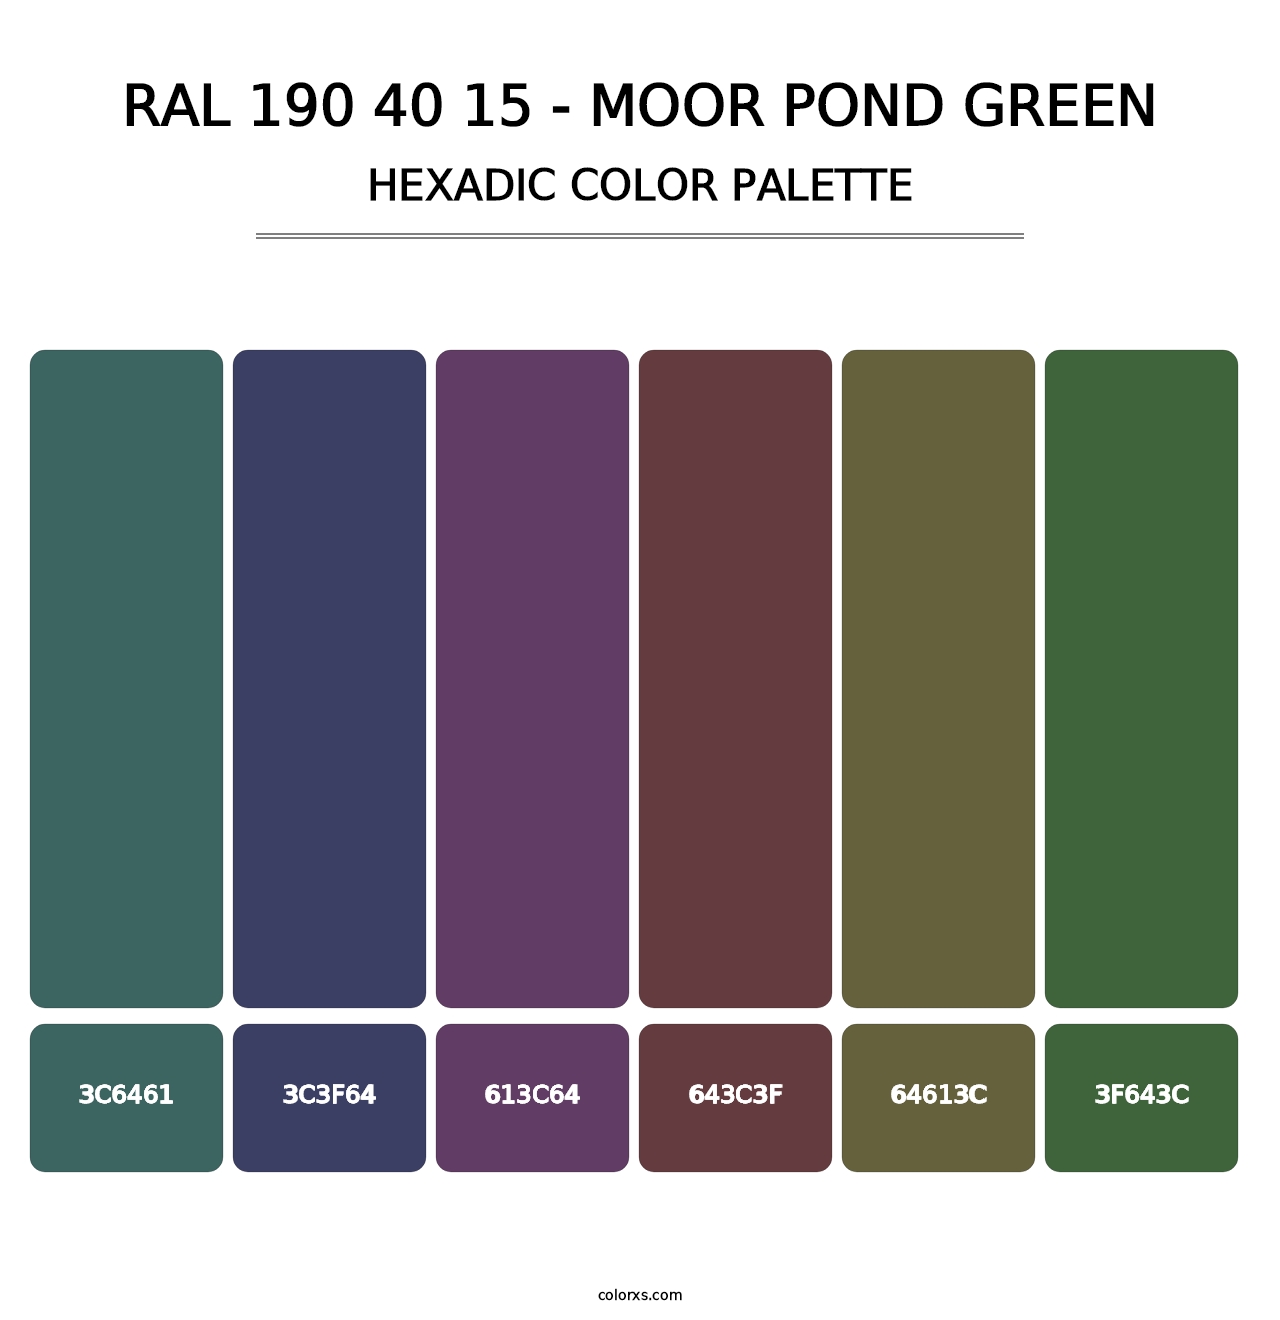 RAL 190 40 15 - Moor Pond Green - Hexadic Color Palette